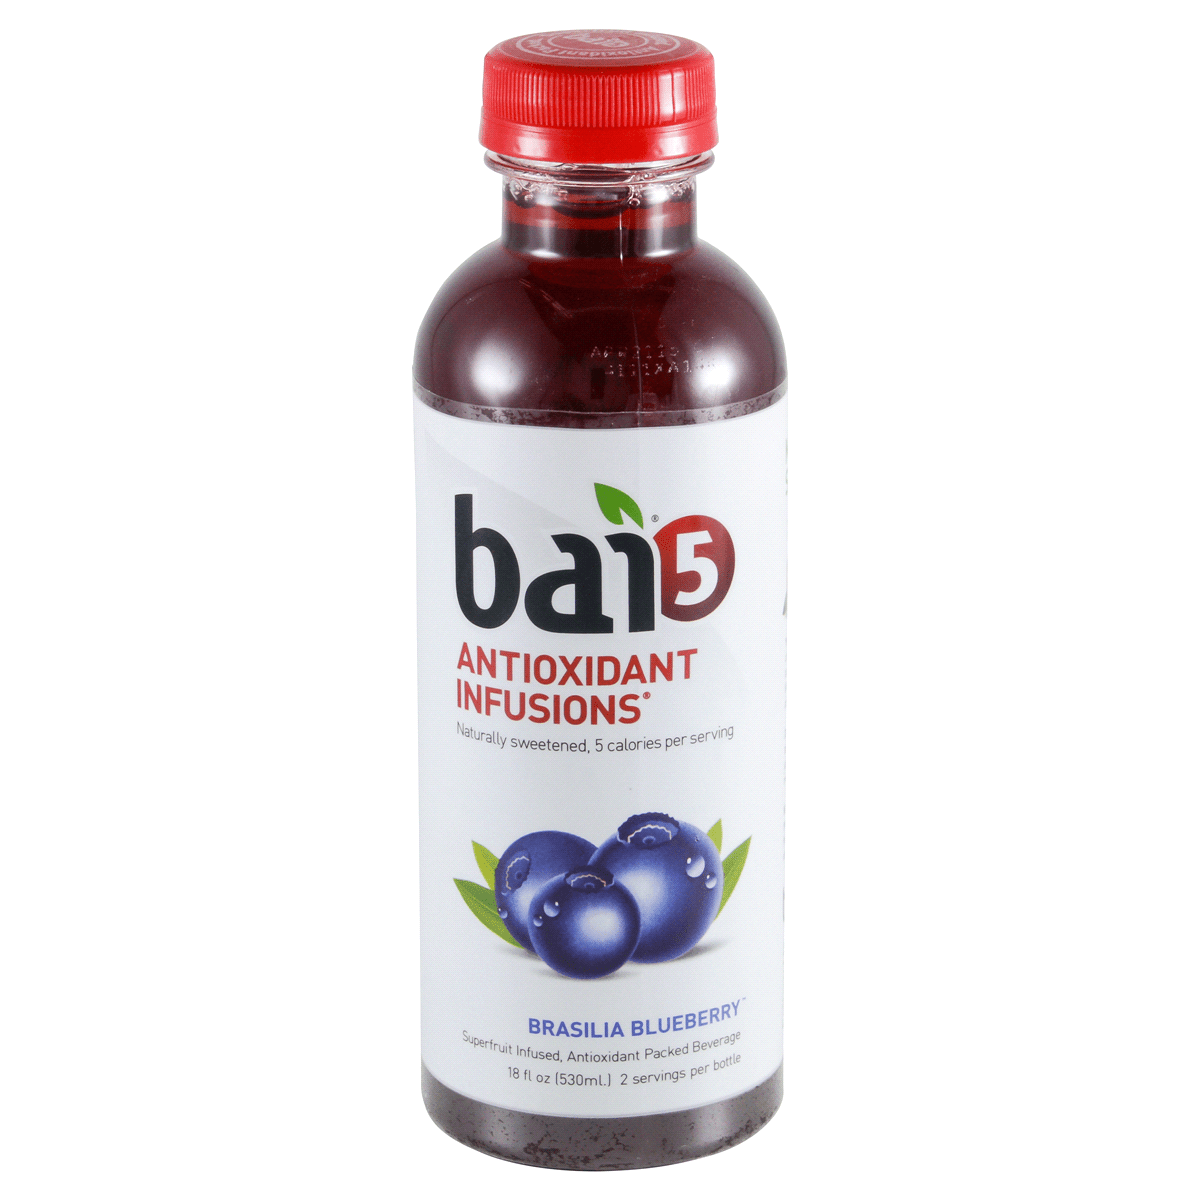 Antioxidantinfusioner Brasilia Blueberry